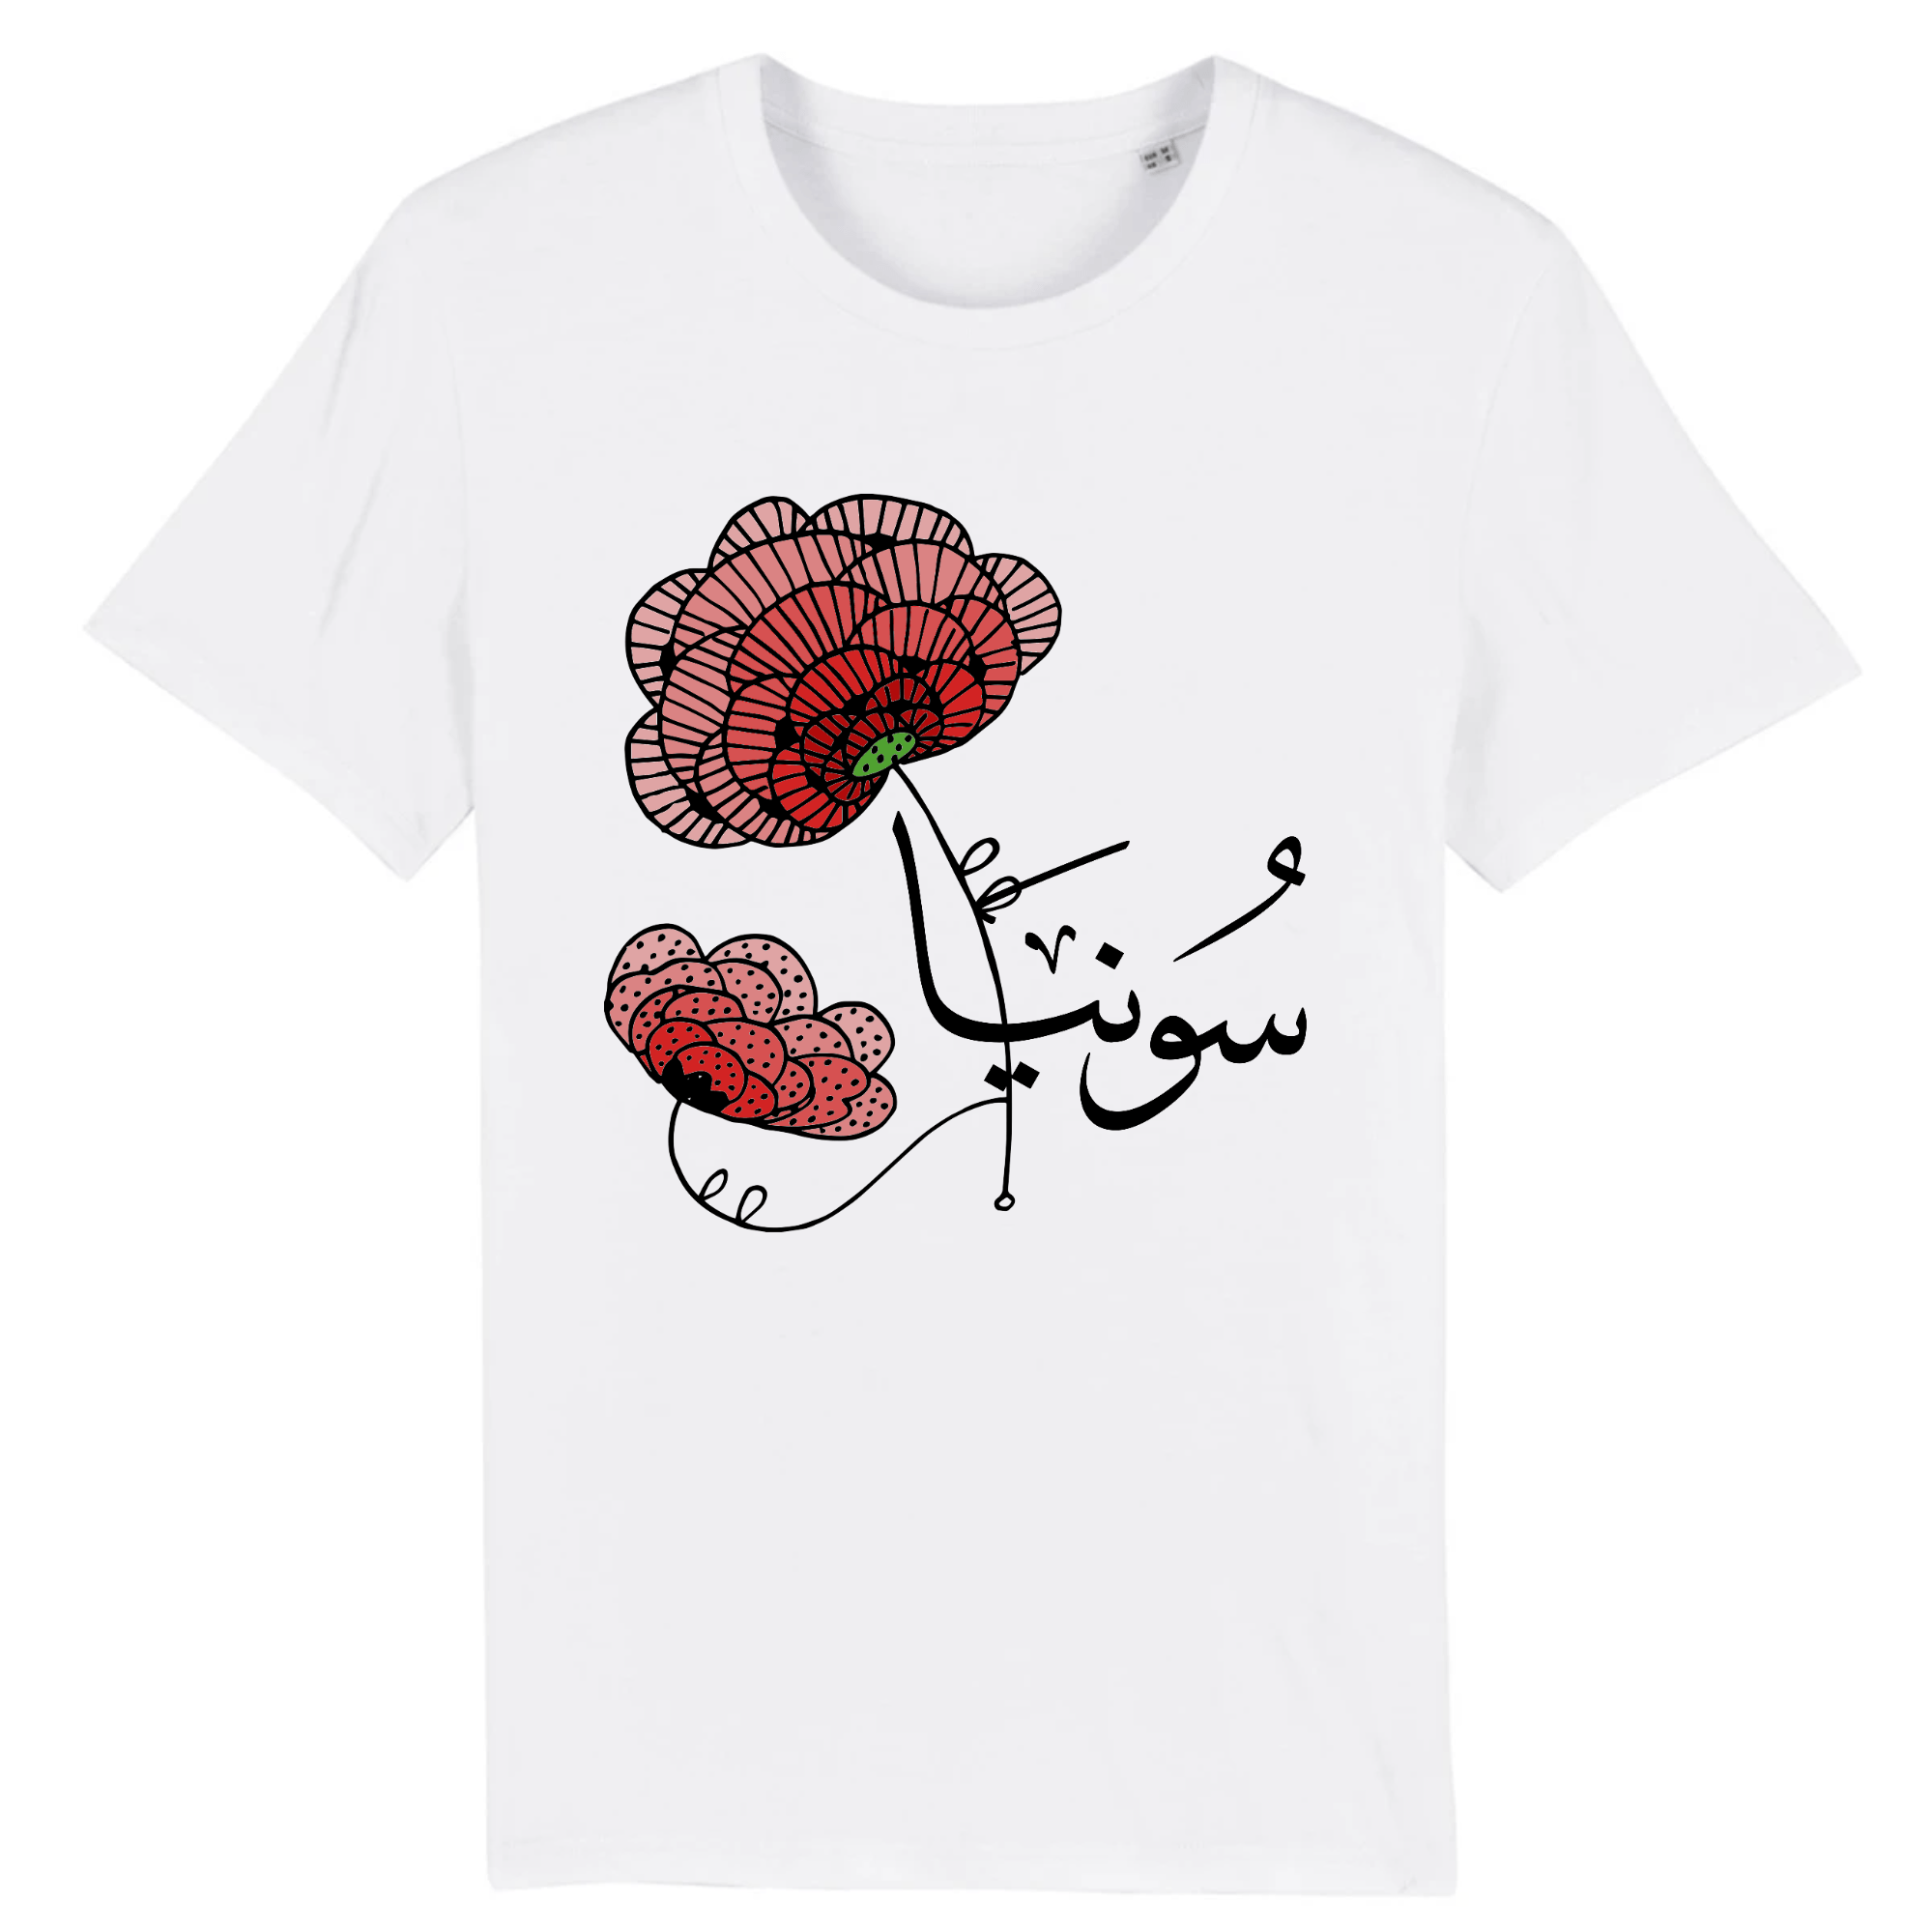 Sonia - T-shirt Calligraphie Arabe